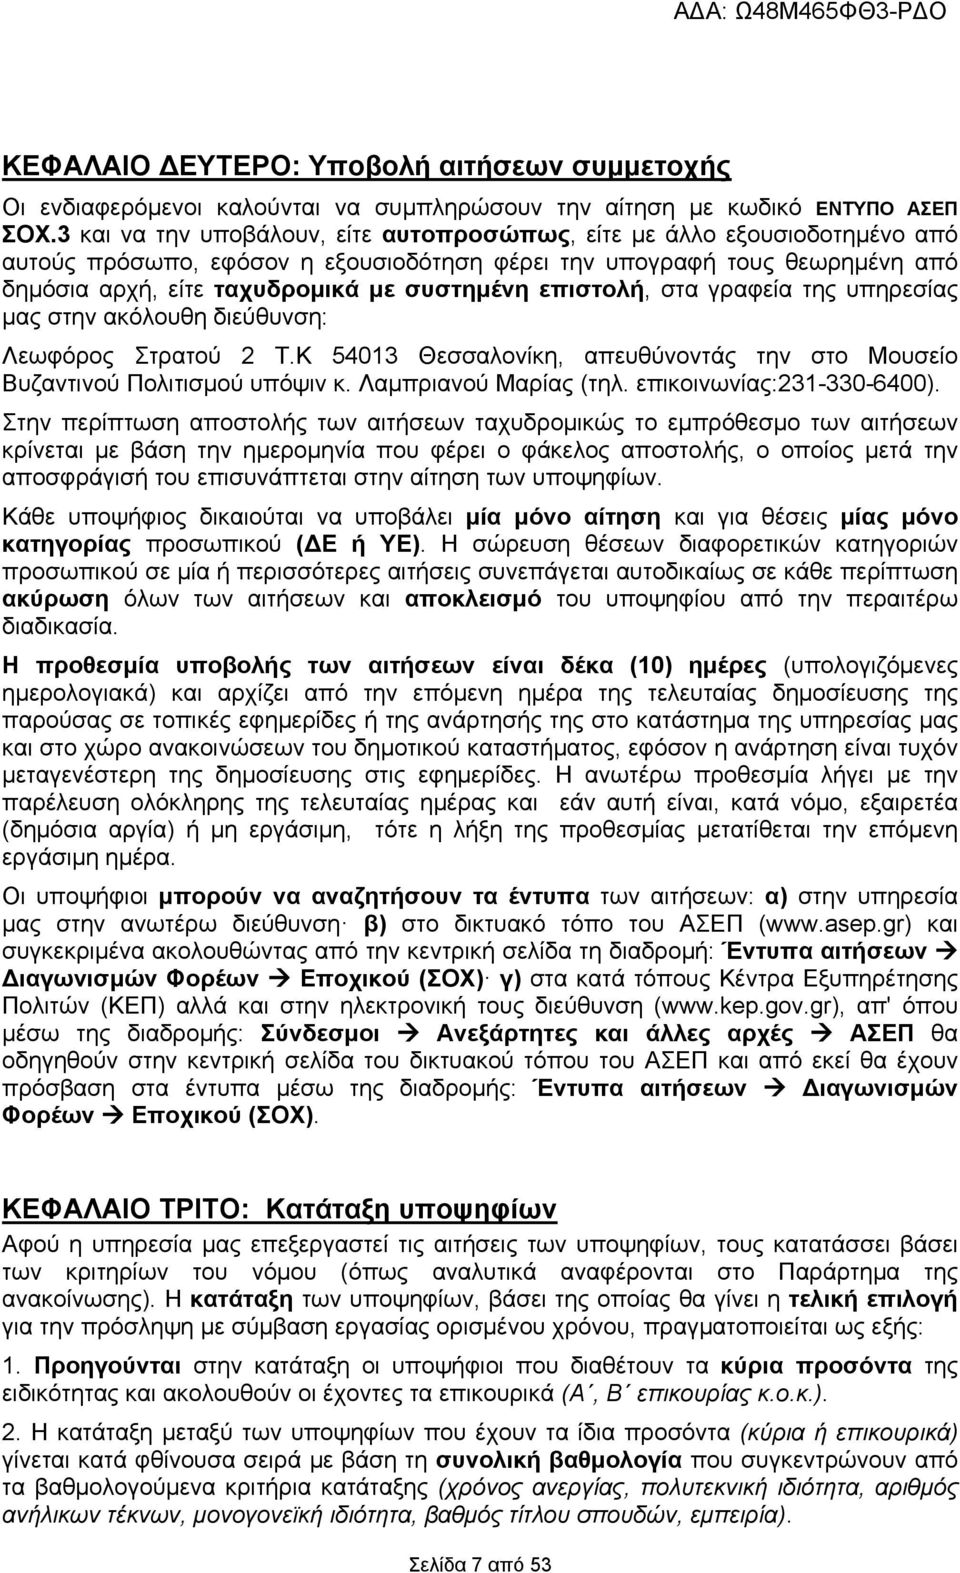 επιστολή, στα γραφεία της υπηρεσίας μας στην ακόλουθη διεύθυνση: Λεωφόρος Στρατού 2 Τ.Κ 54013 Θεσσαλονίκη, απευθύνοντάς την στο Μουσείο Βυζαντινού Πολιτισμού υπόψιν κ. Λαμπριανού Μαρίας (τηλ.